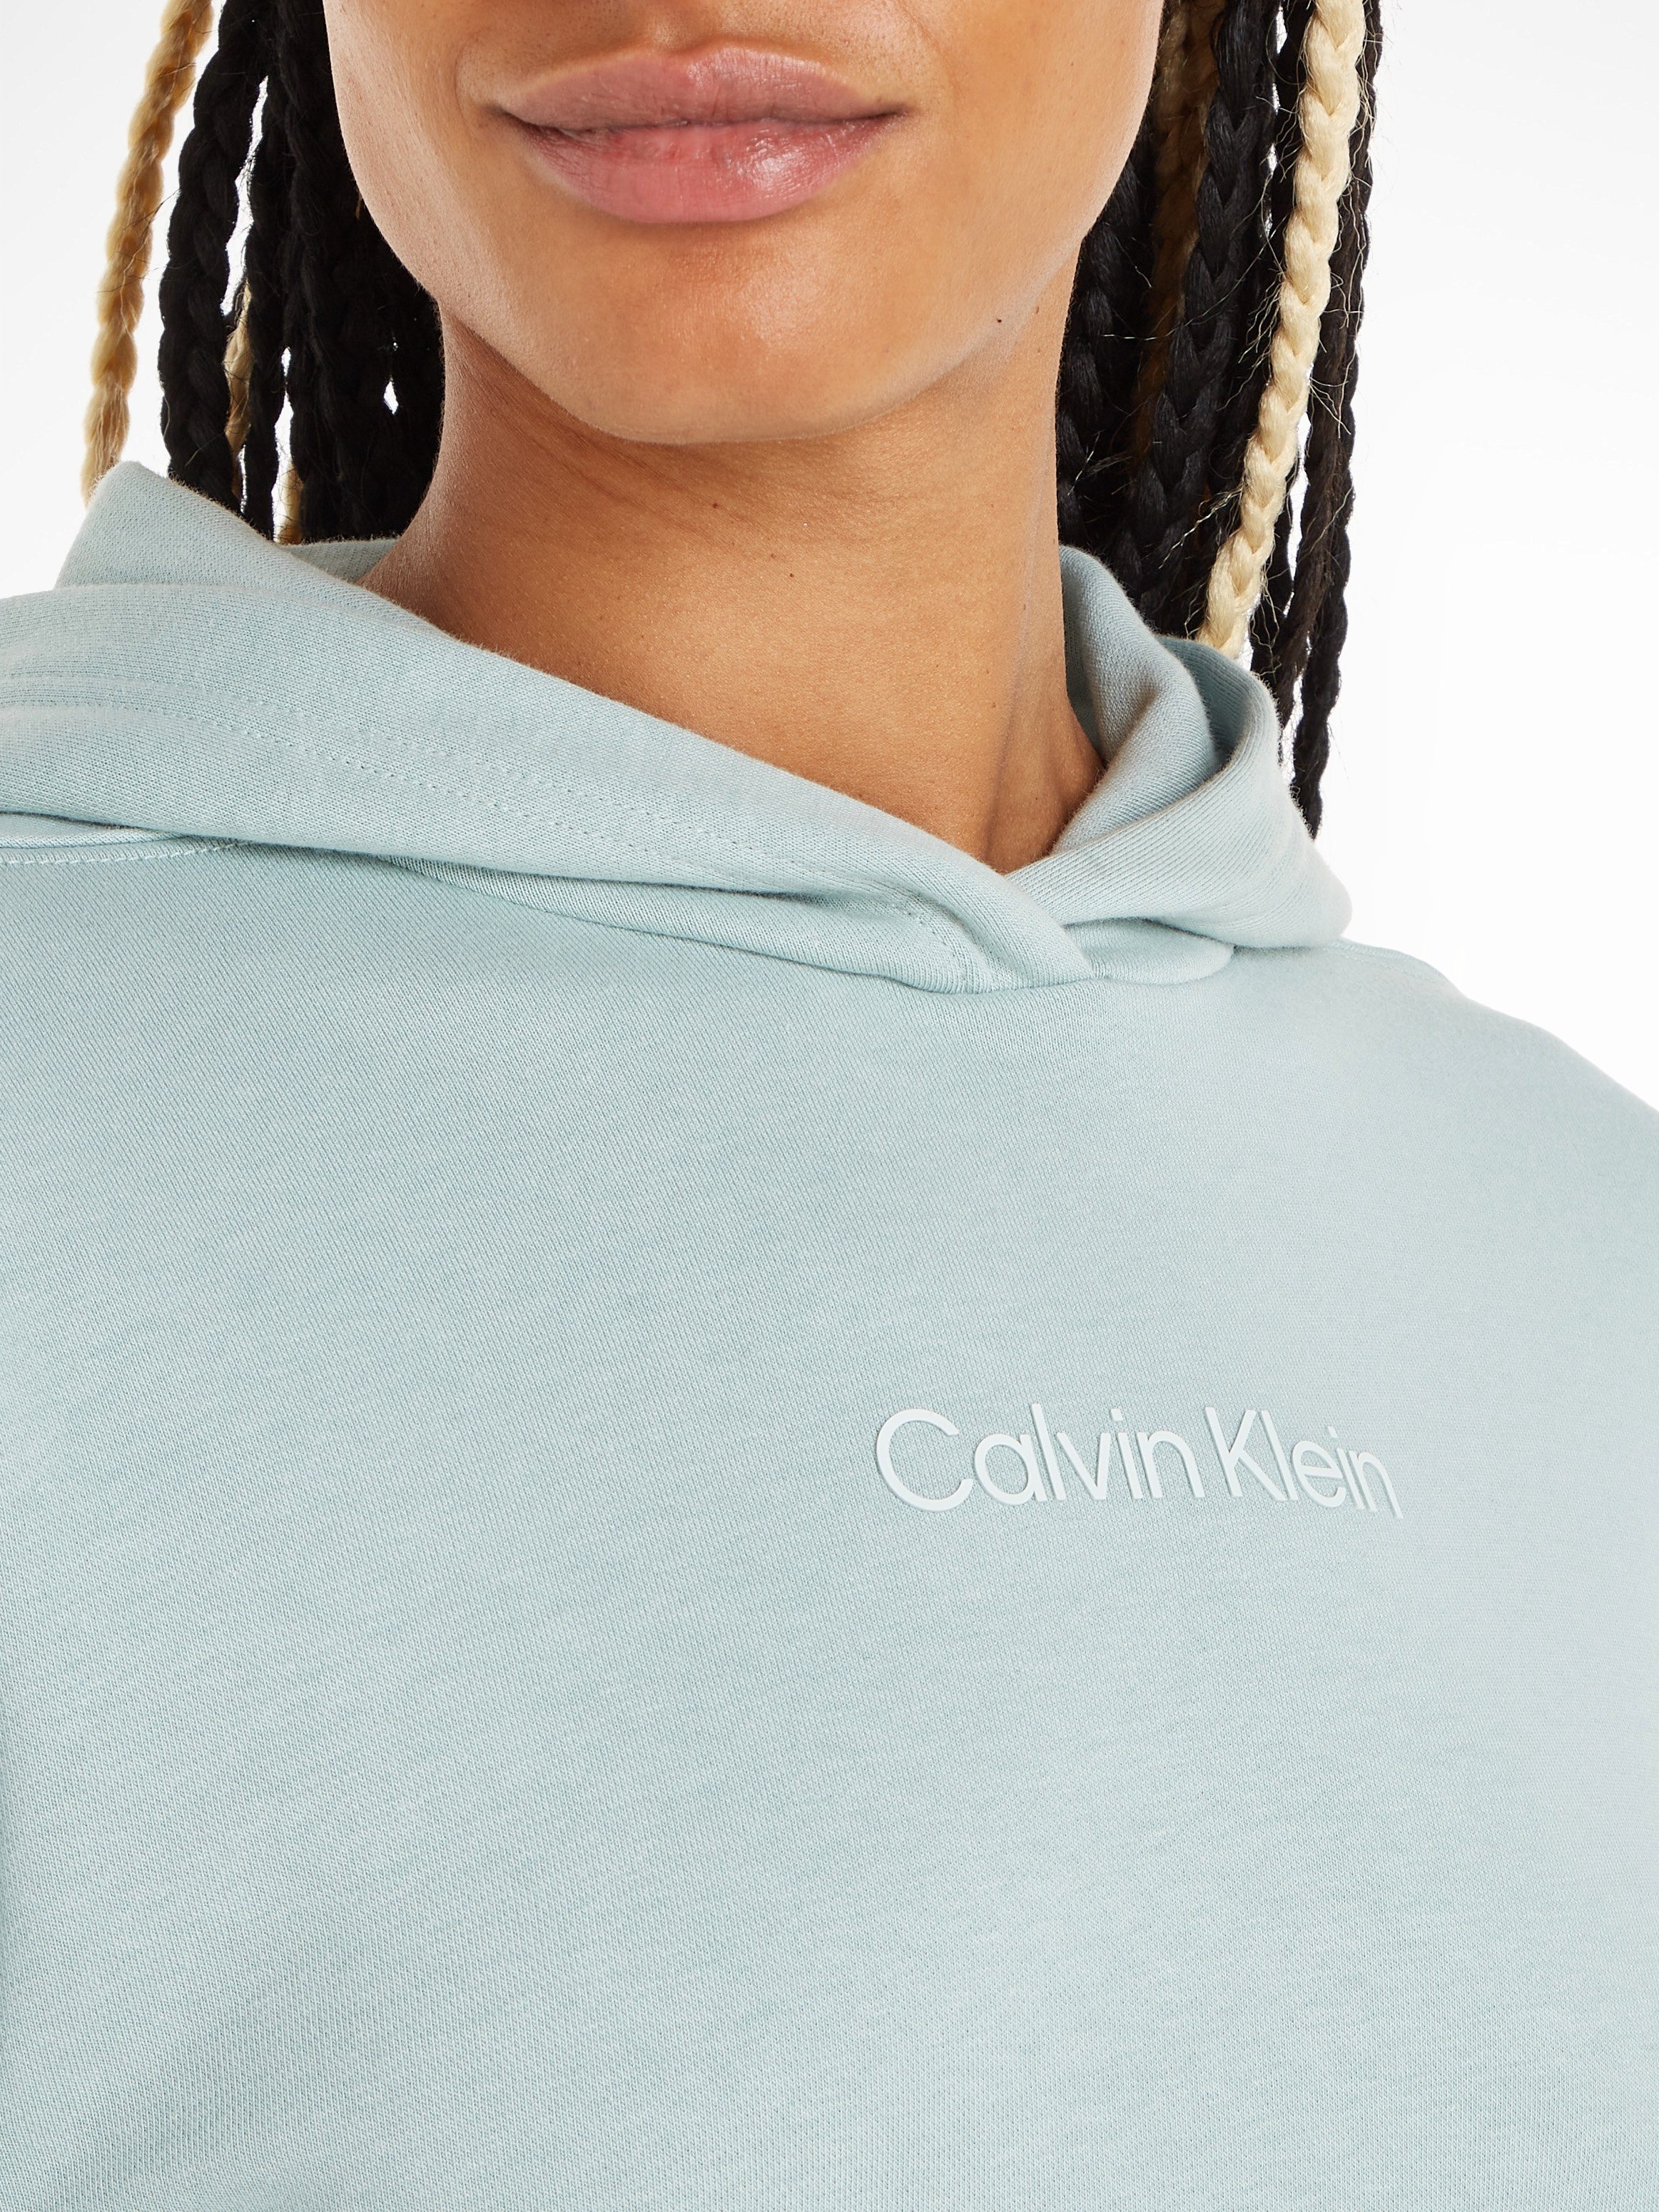 Calvin Klein Sport Hoodie - PW blau Sweatshirt Kapuzensweatshirt